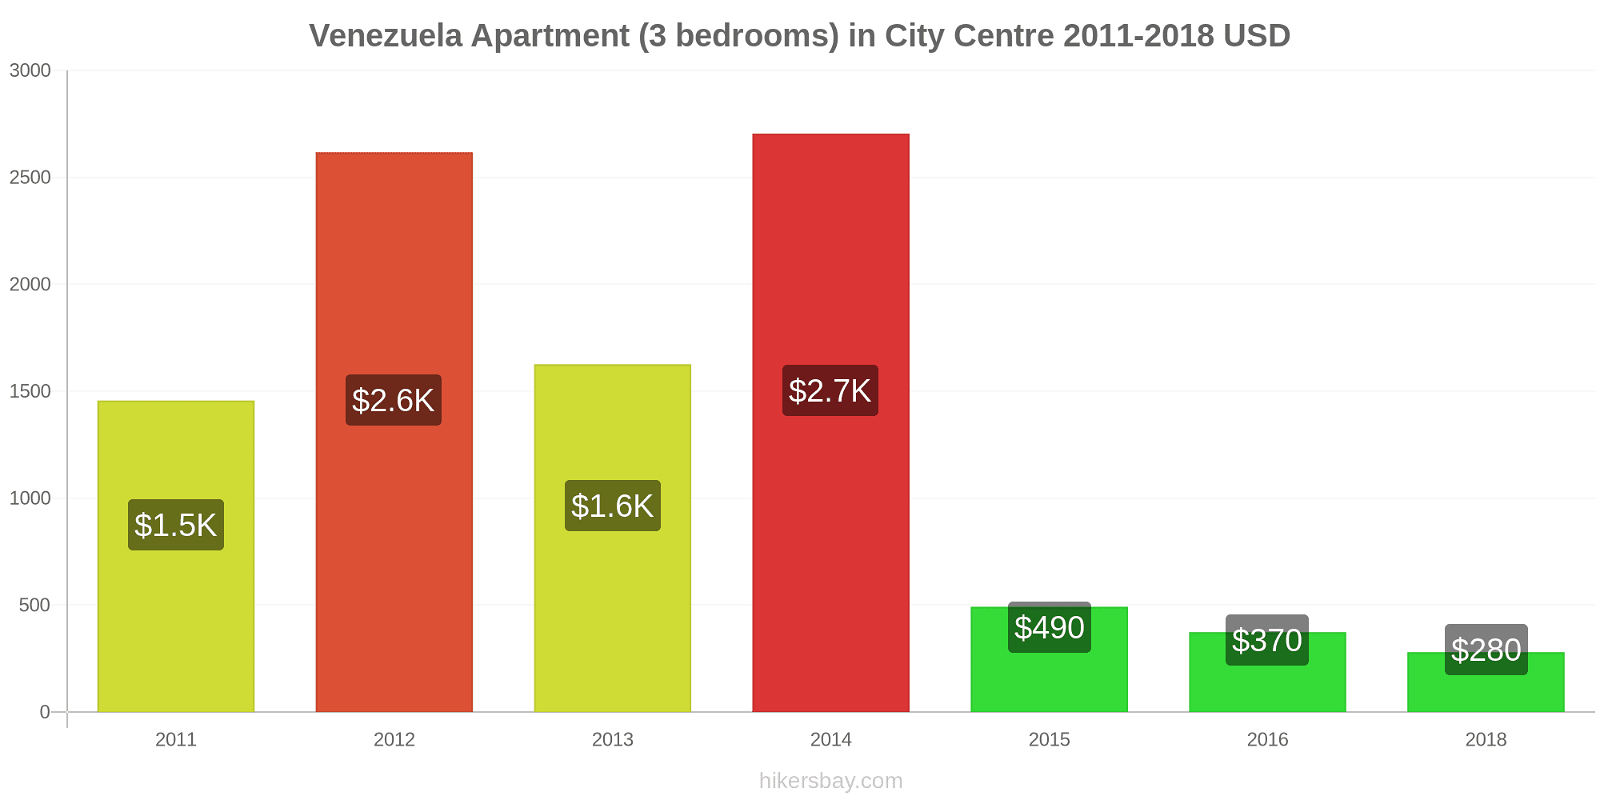 Venezuela price changes Apartment (3 bedrooms) in City Centre hikersbay.com